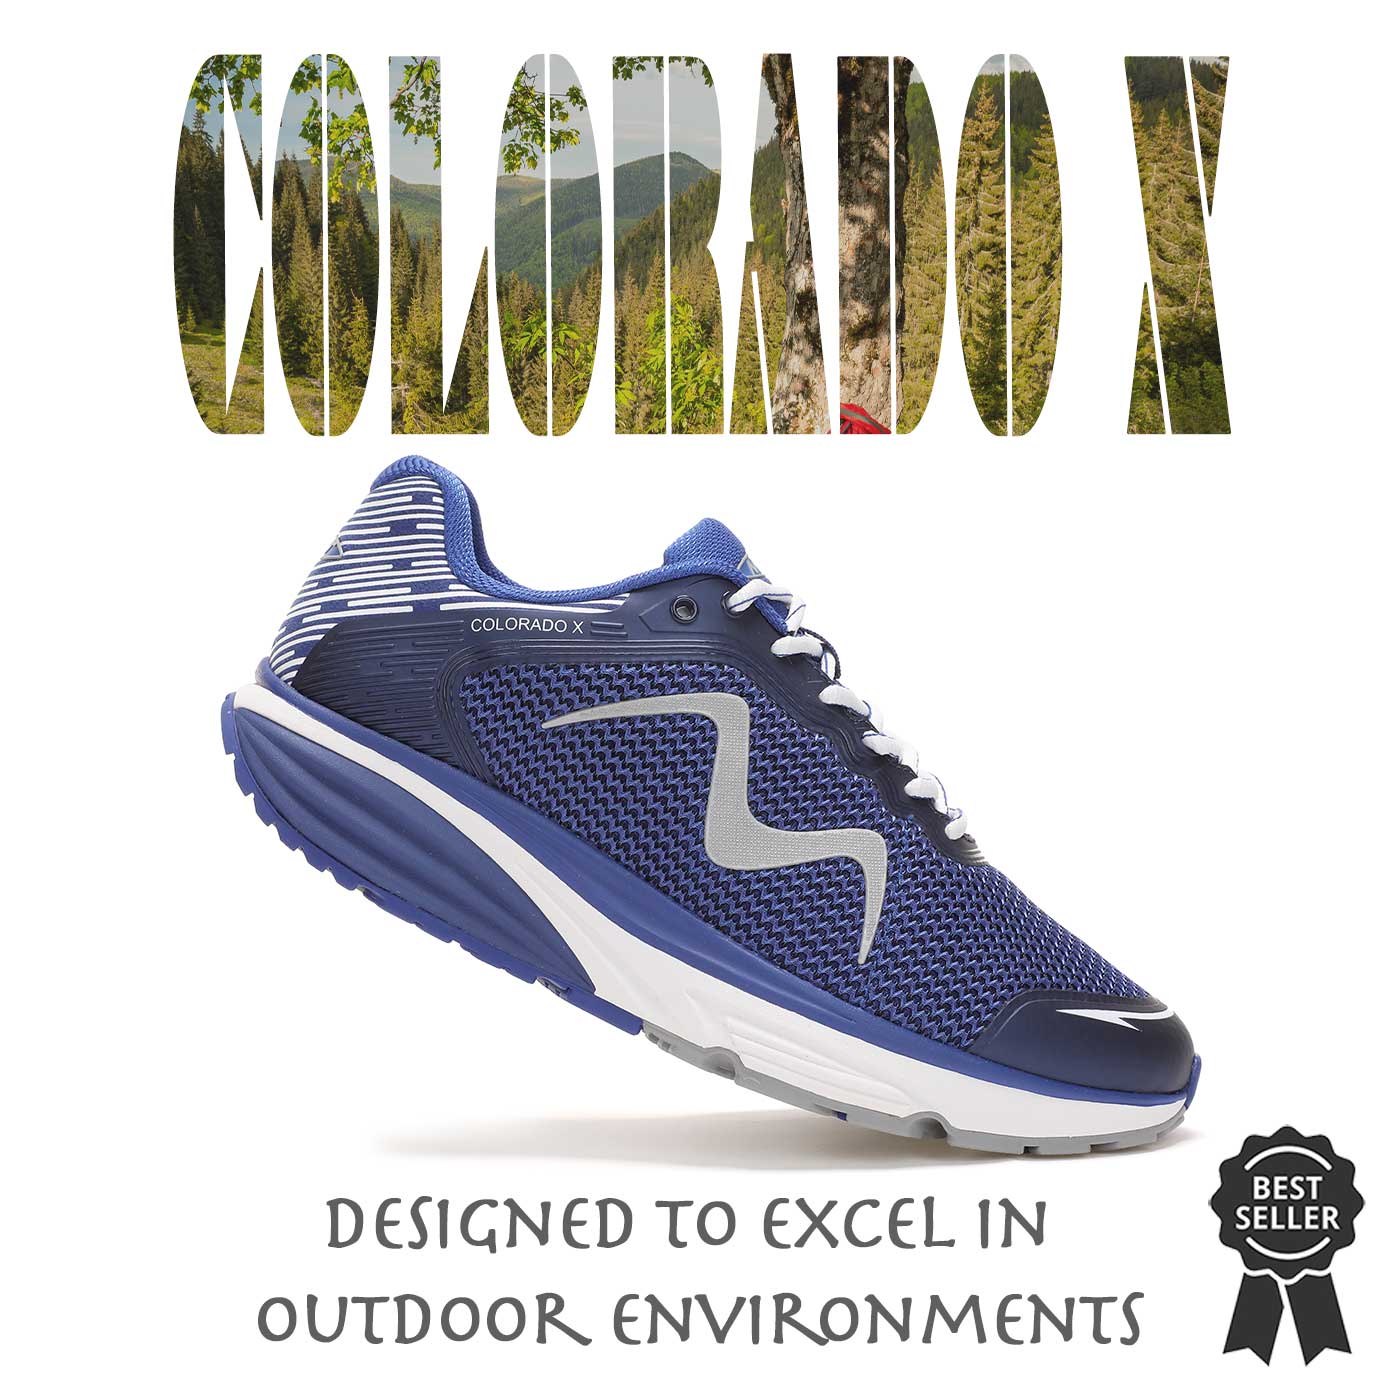 Colorado X - Best Selling Rocker Bottom Shoes